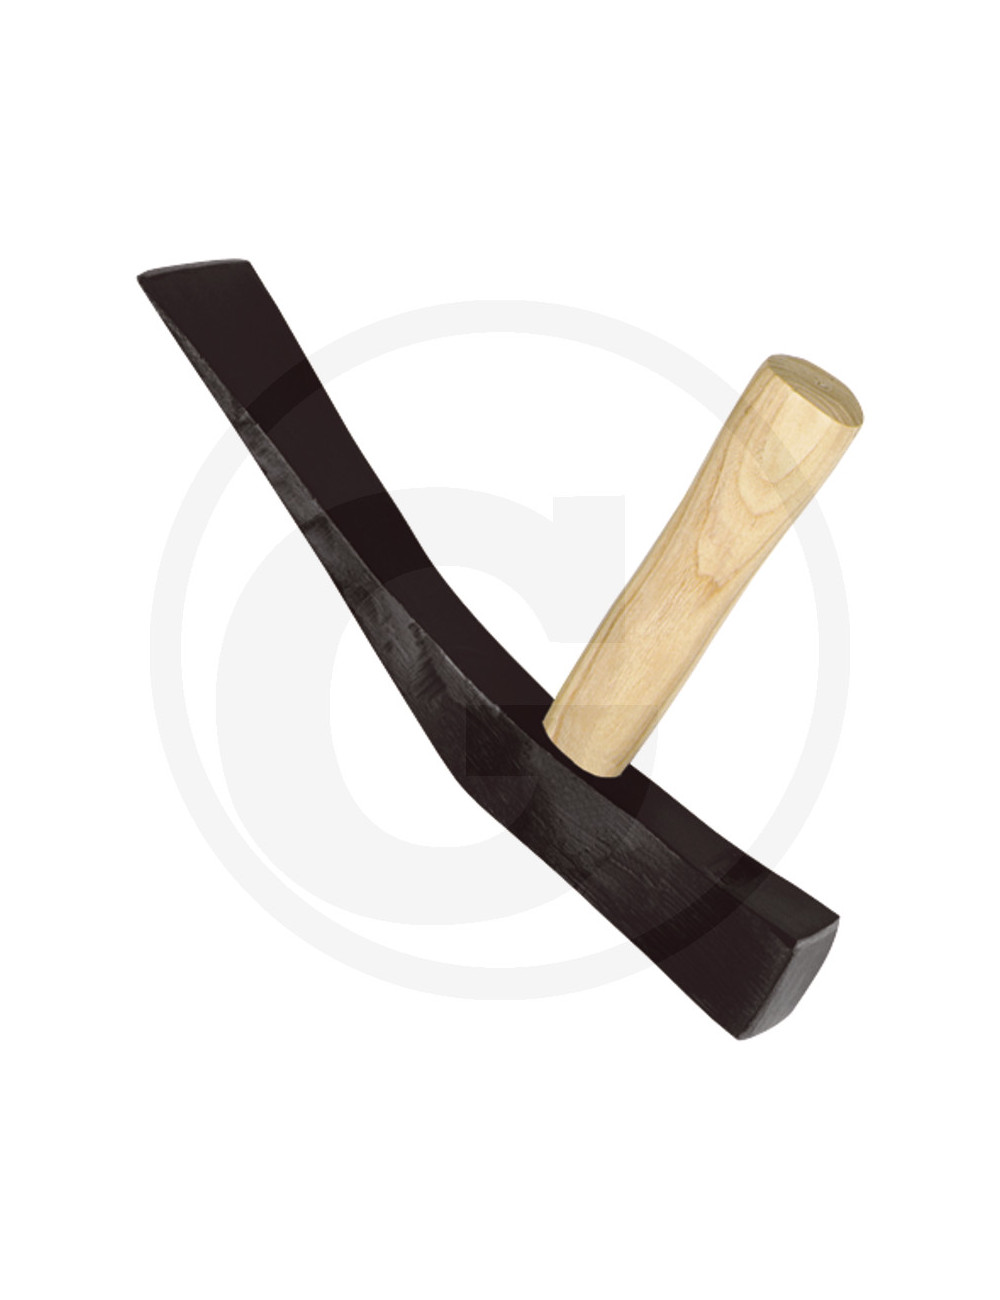 Mazza per pavimento doppio incastro in legno Granit Ideal cod 76570546